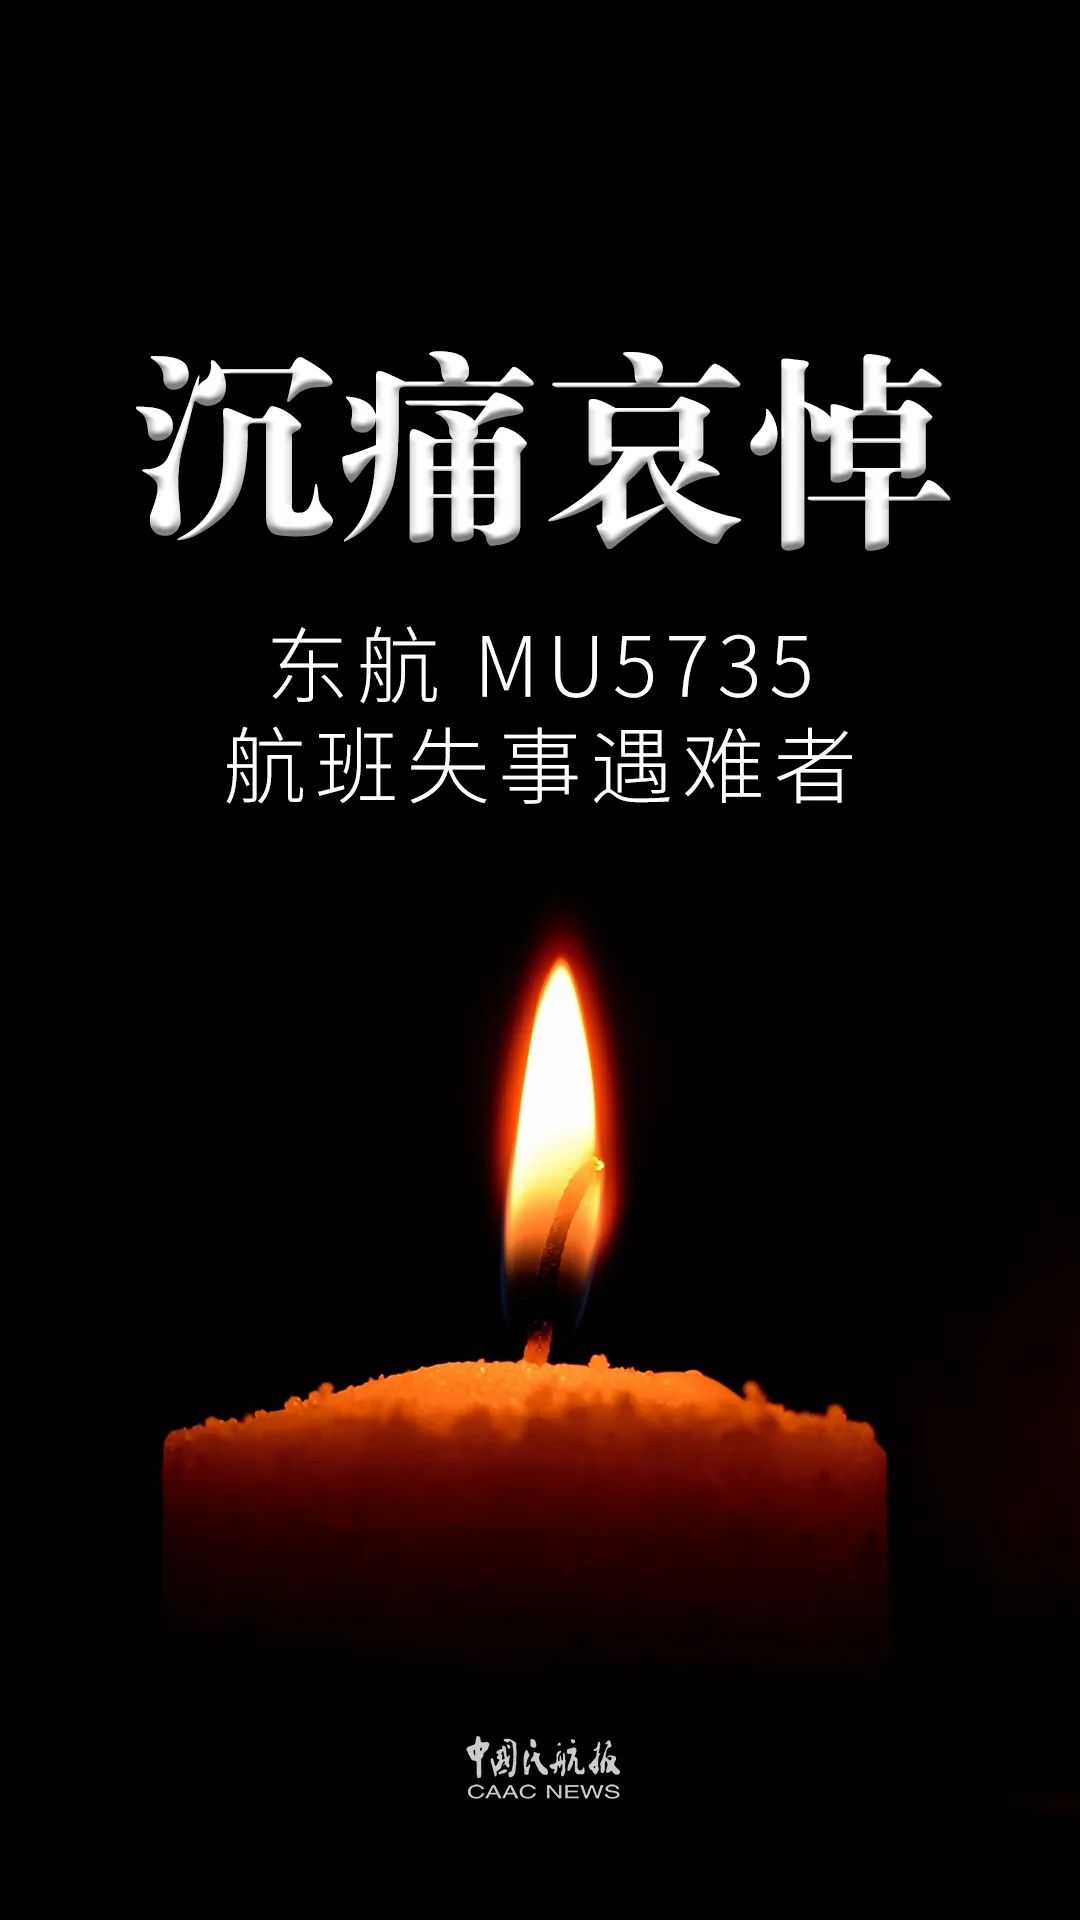 321东航mu5735航空器飞行事故现场举行遇难者哀悼活动